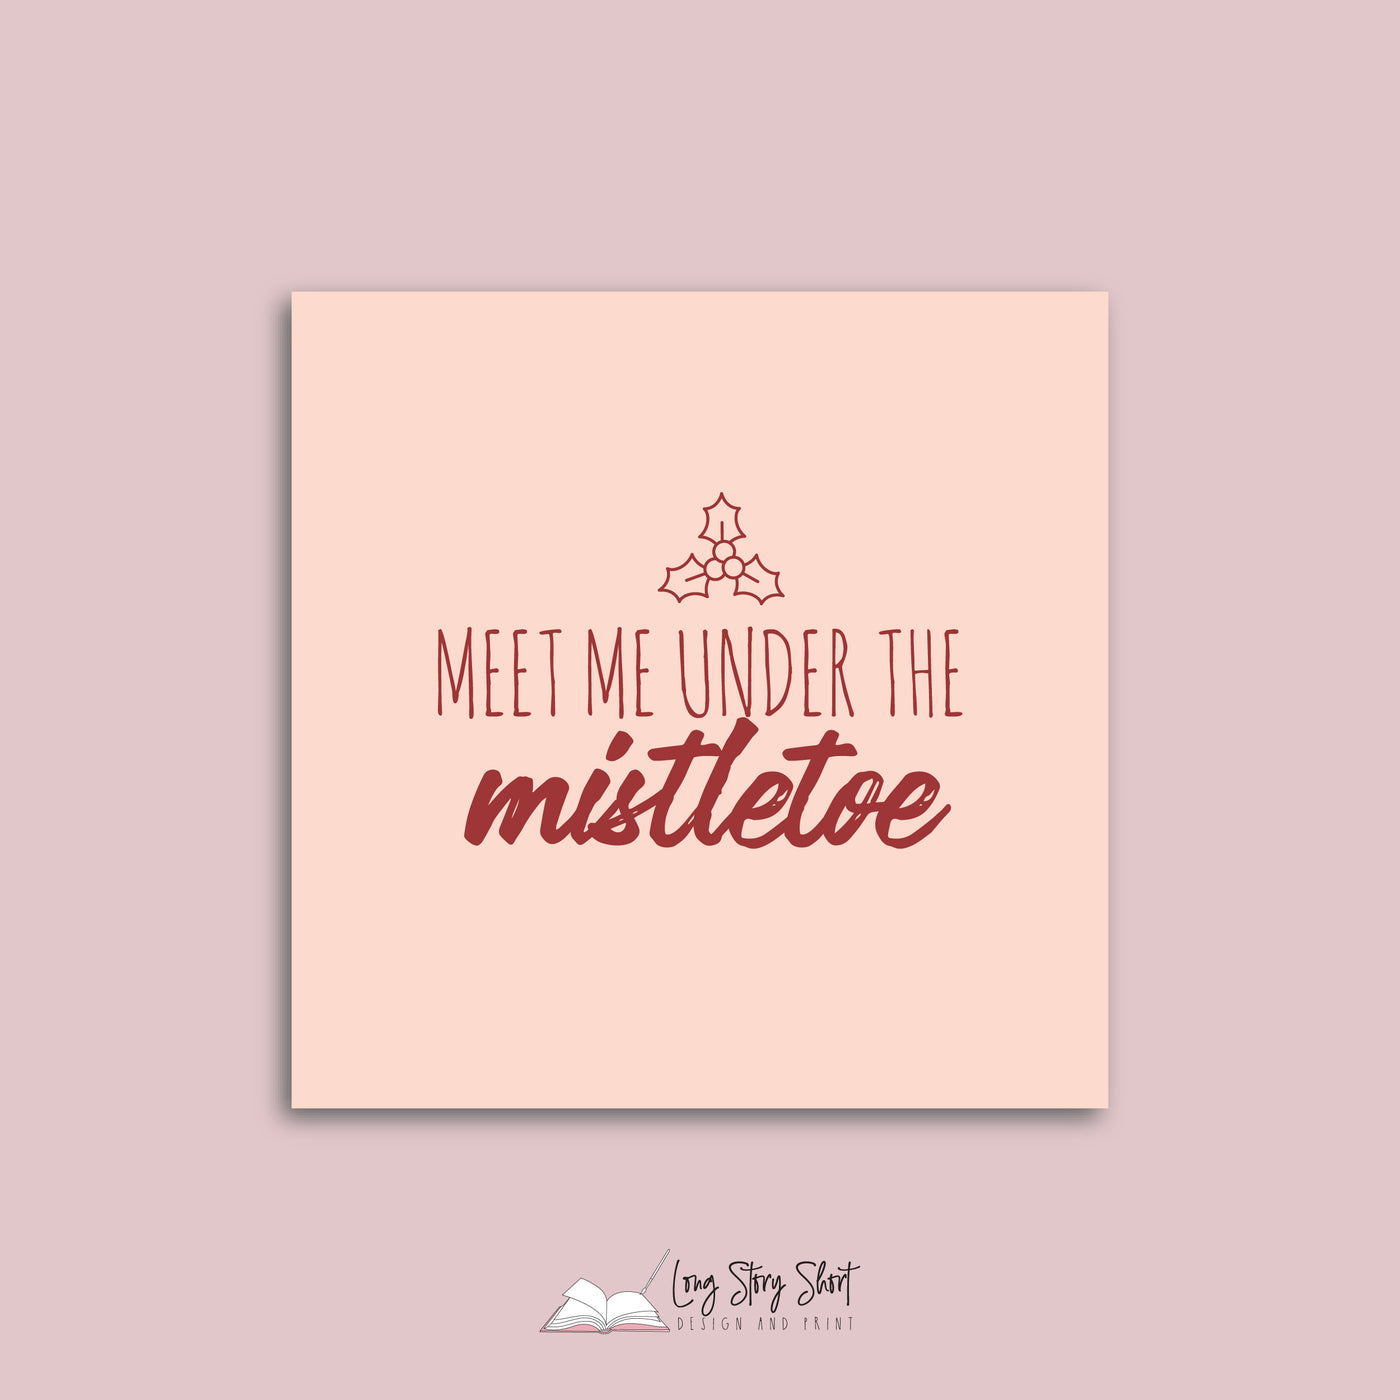 Meet me under the mistletoe Christmas Vinyl Label Pack Square Matte/Gloss